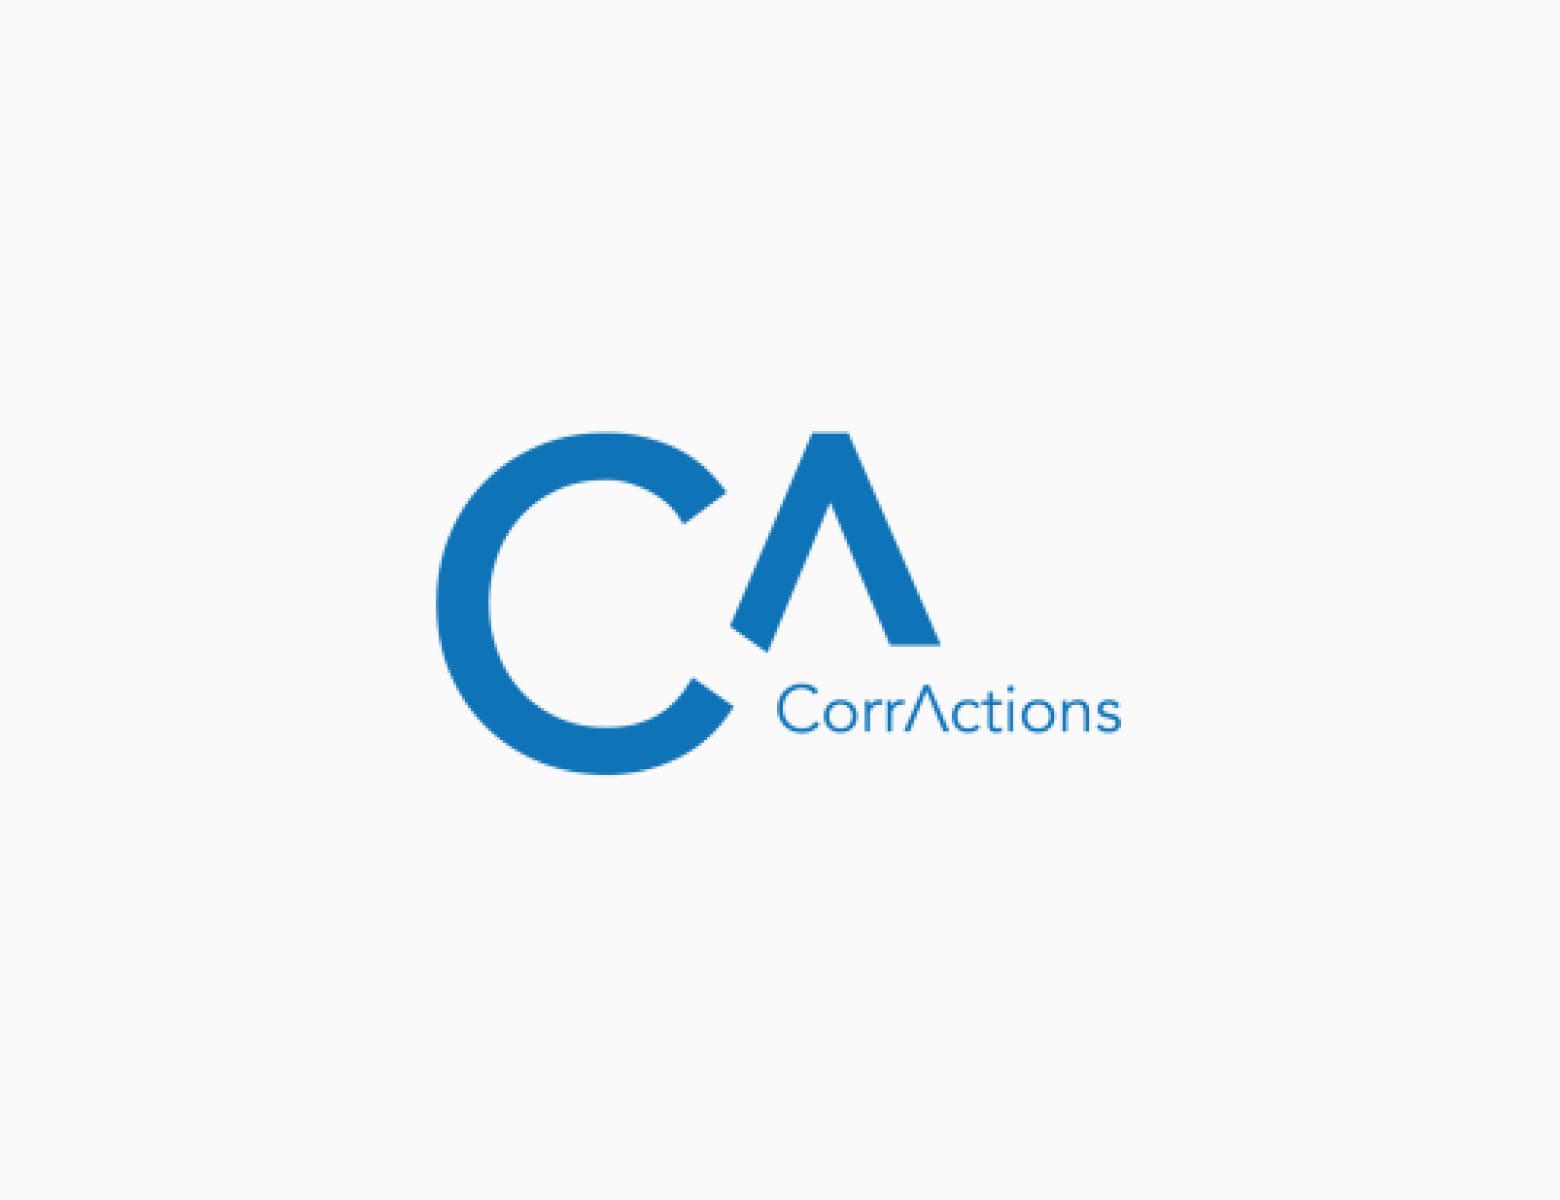 CorrActions logo